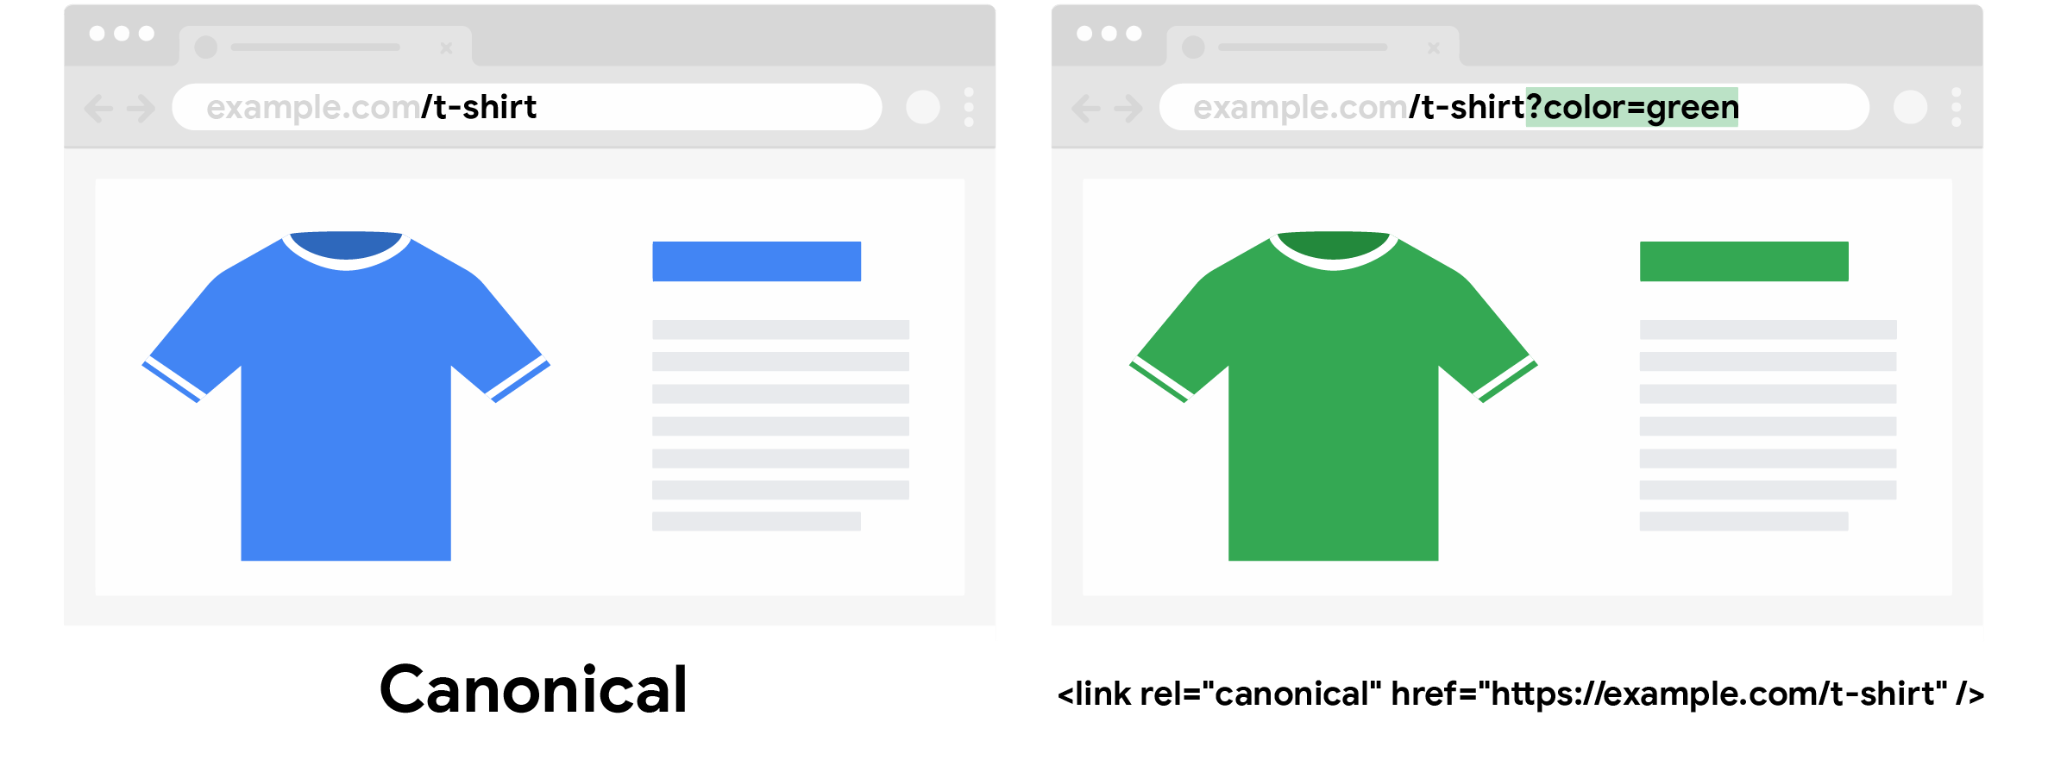 ‫عنوان URL أساسي لقميص أزرق بدون معلَمة طلب بحث خاصة باللون وعنوان URL غير أساسي لقميص أخضر مع تحديد معلَمة طلب بحث خاصة باللون